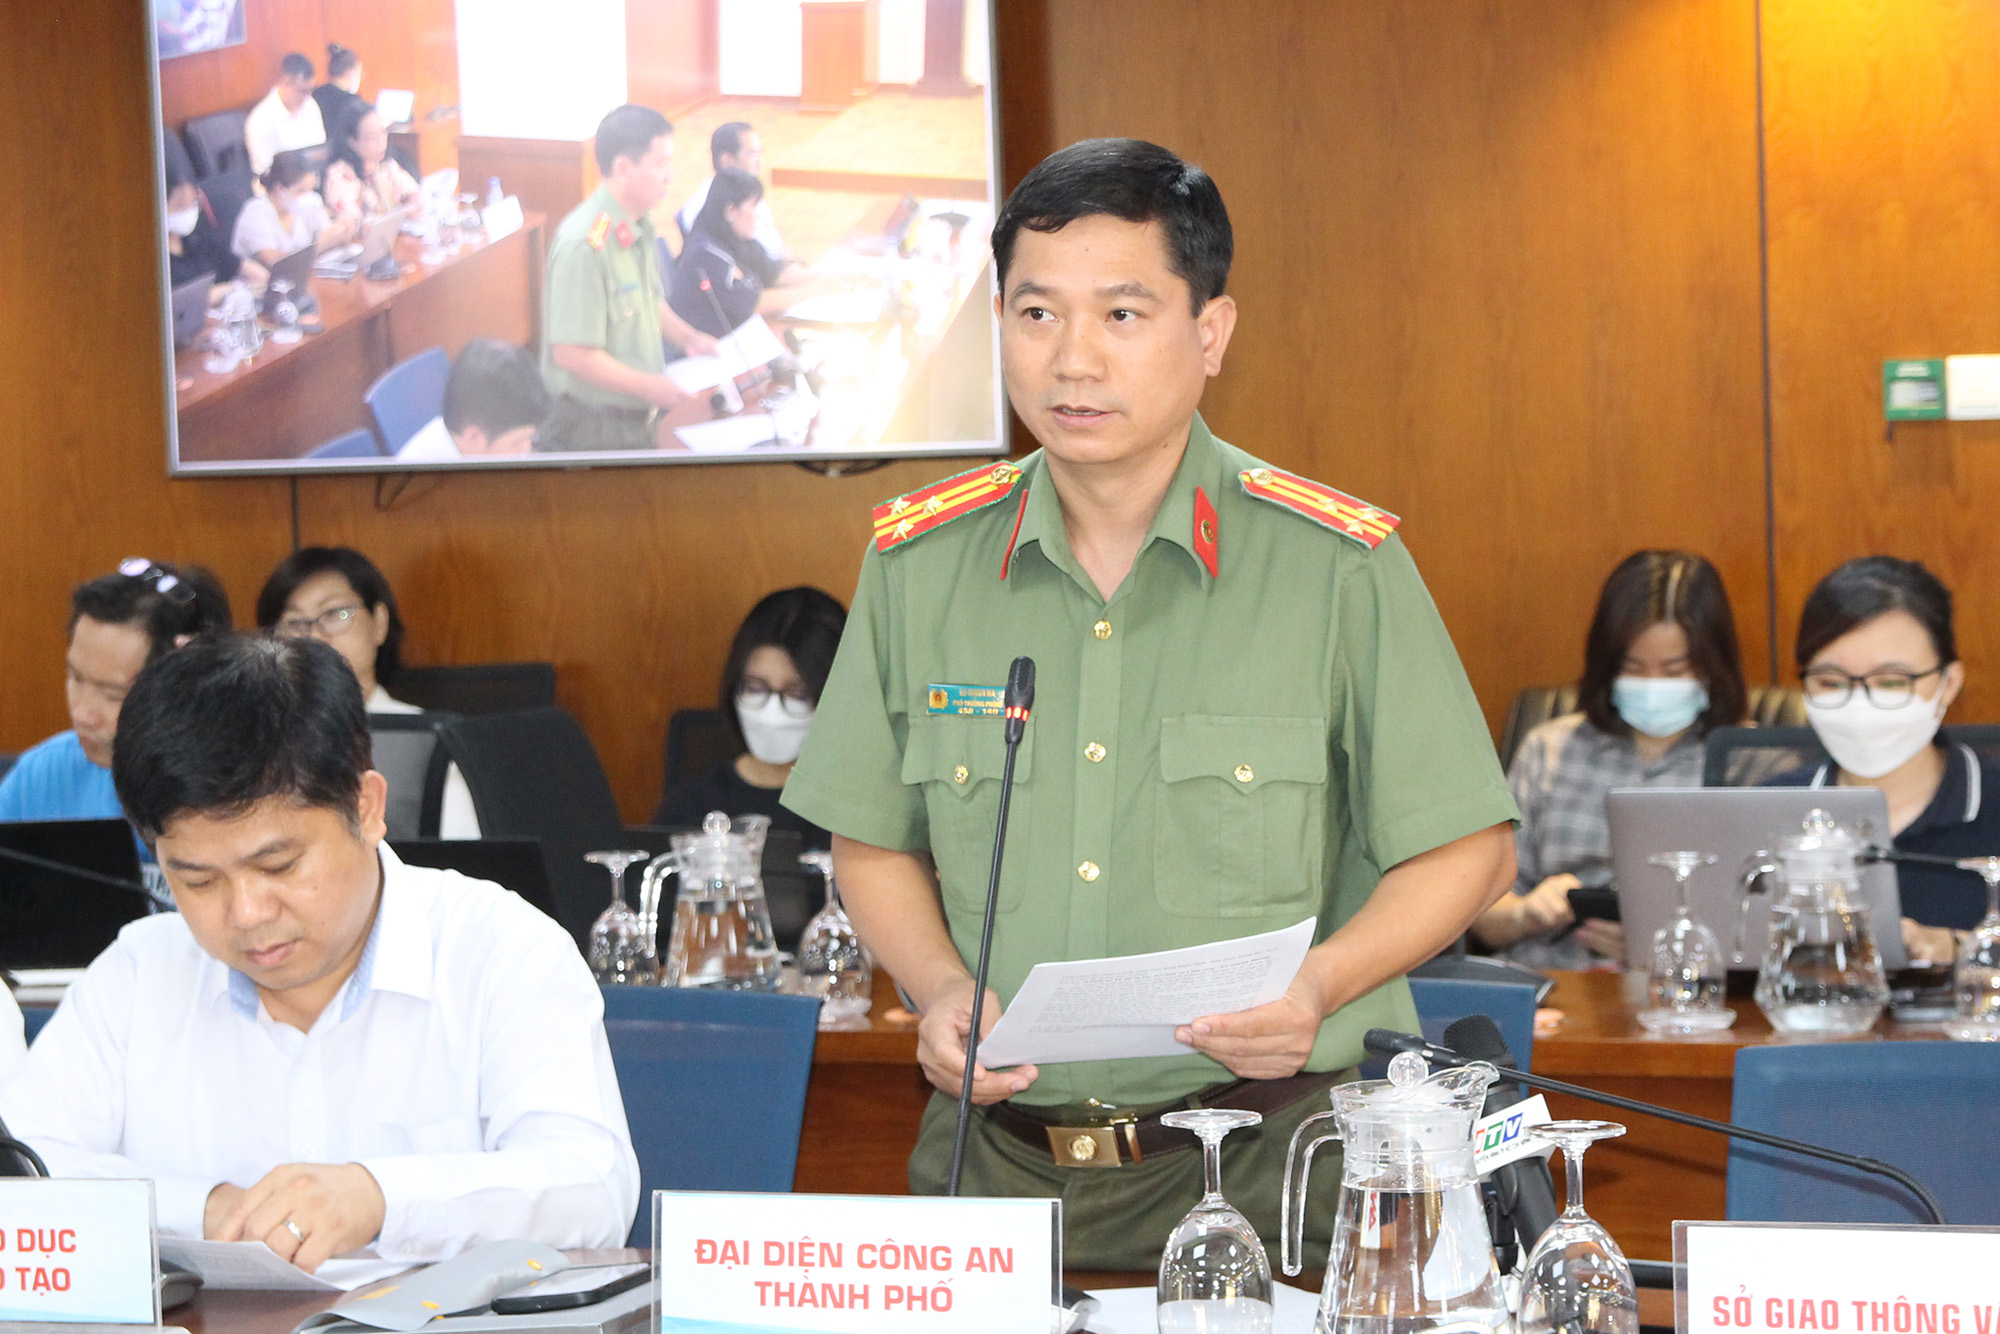 Thượng tá Lê Mạnh Hà, Phó Trưởng Phòng tham mưu Công an TP. Hồ Chí Minh phát biểu tại buổi họp báo (Ảnh: H.Hào).